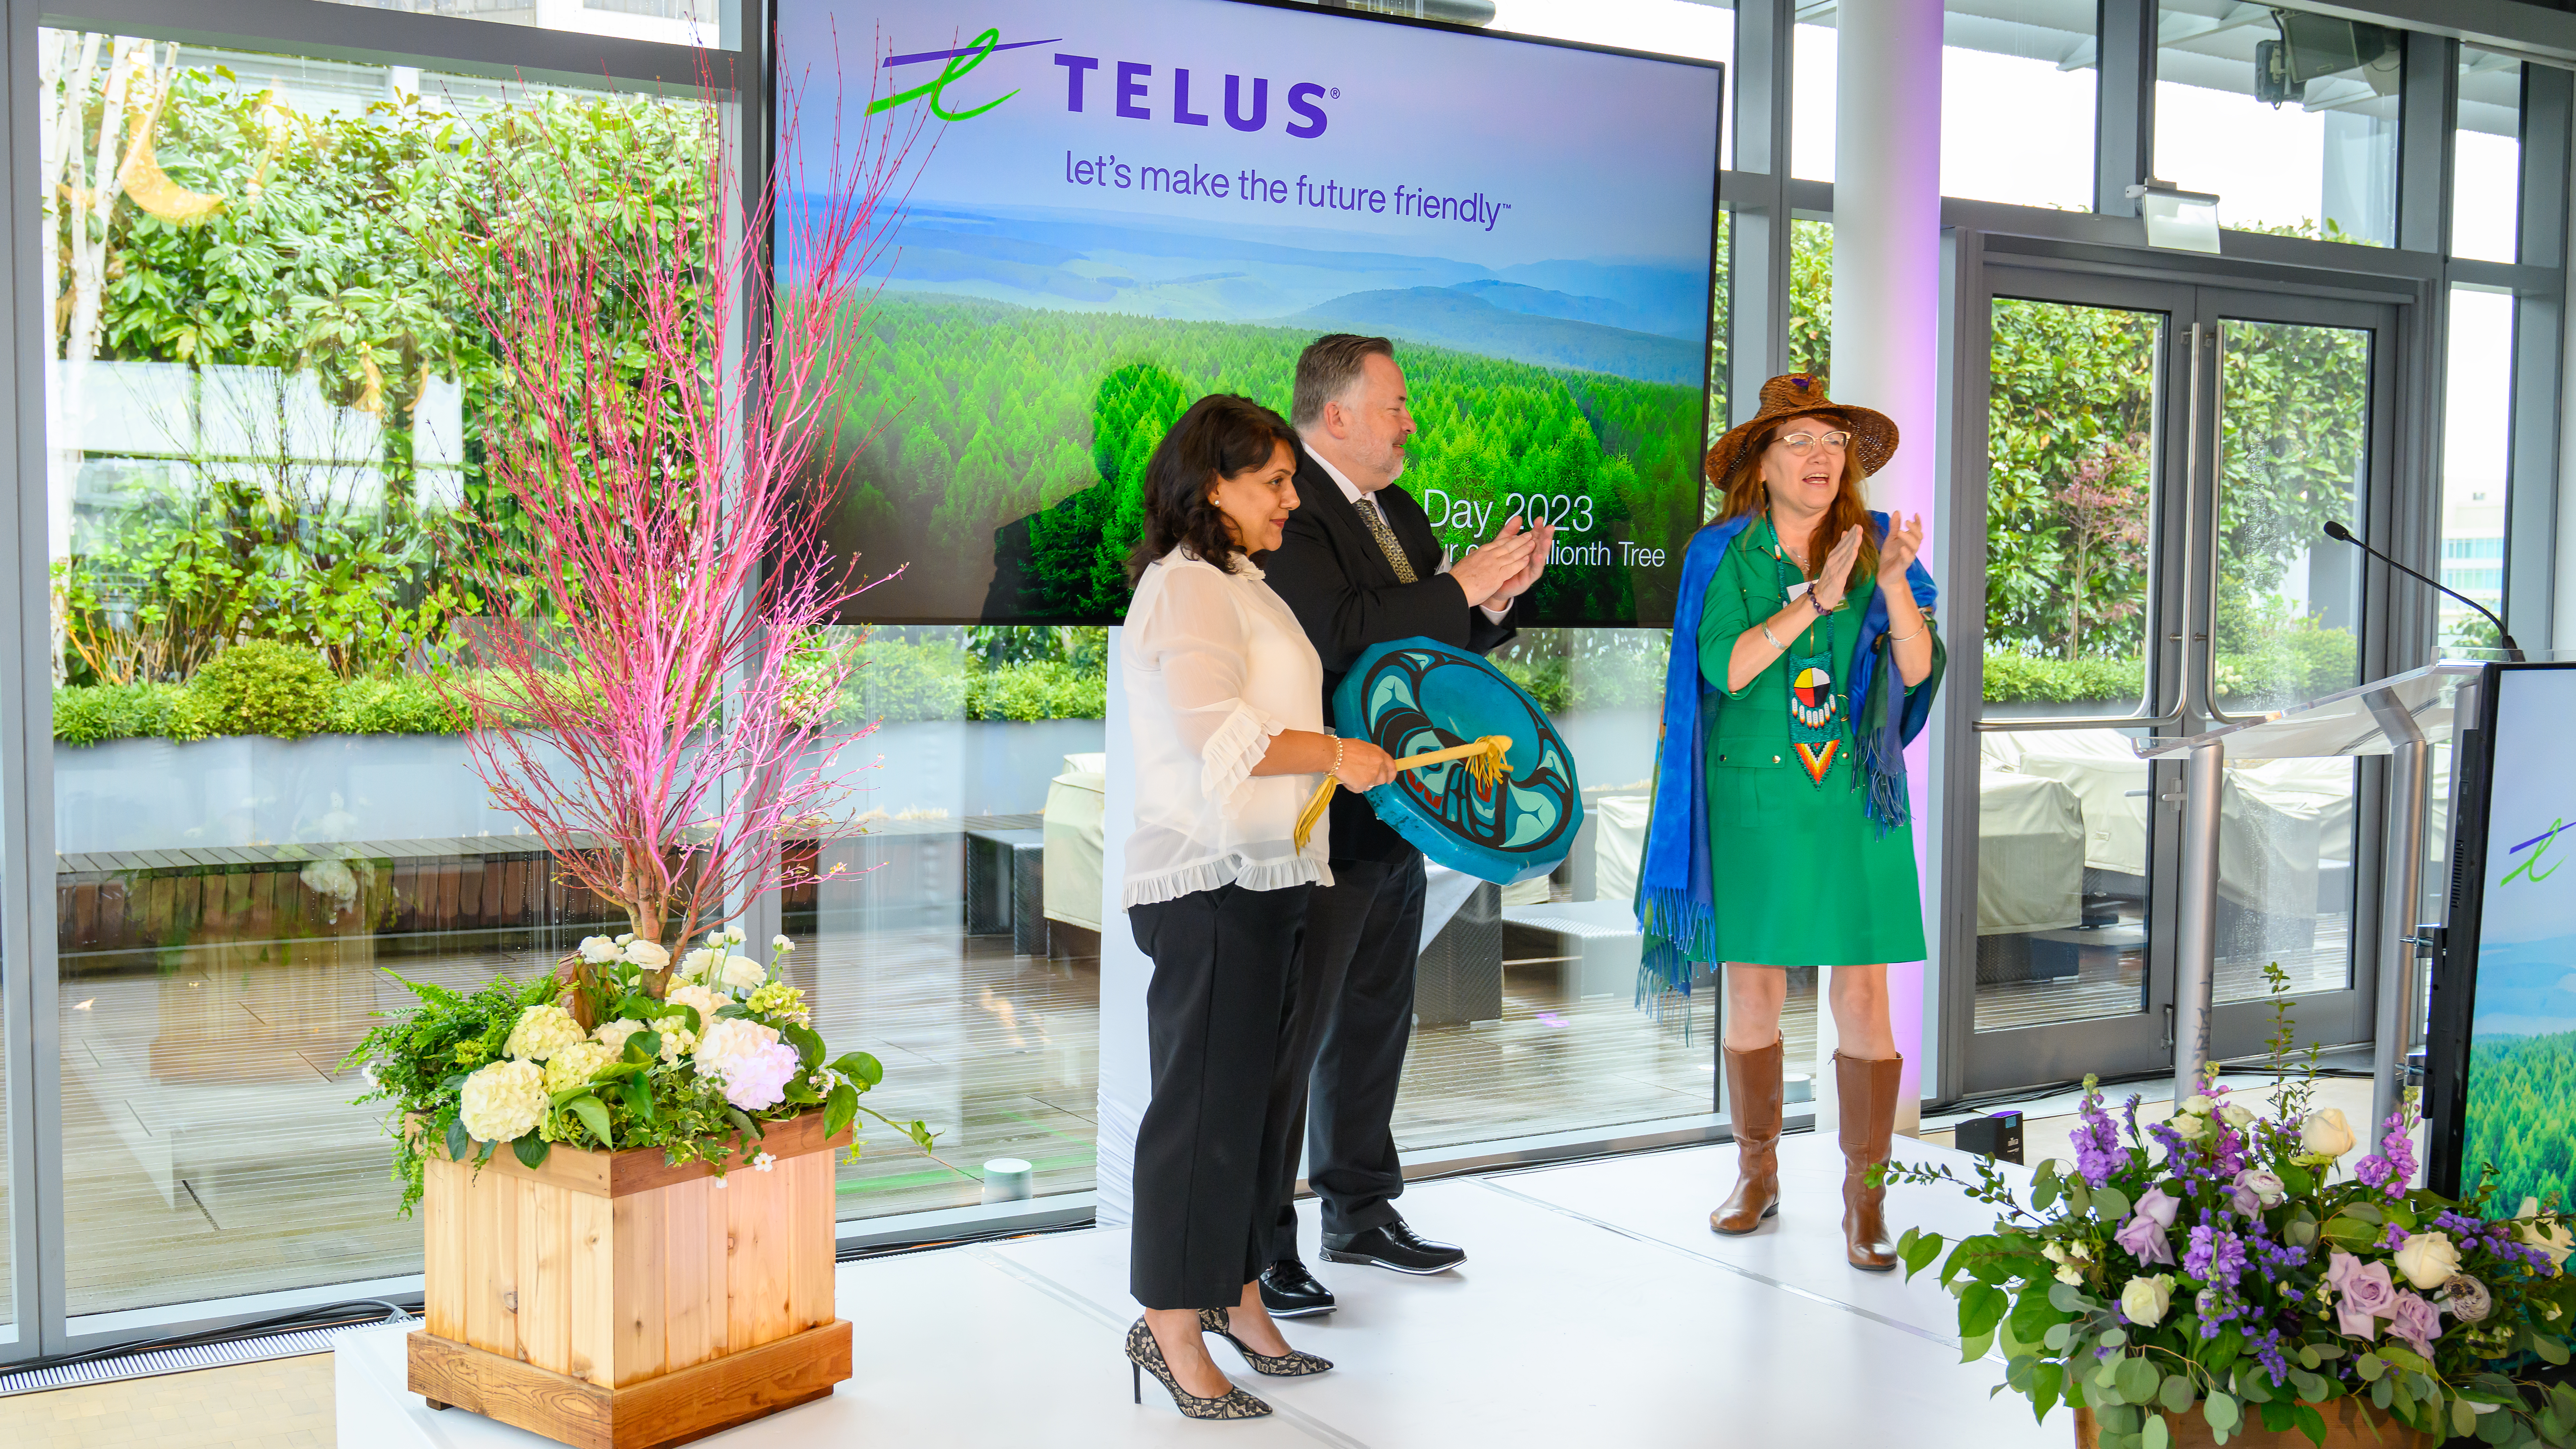 Des membres de l’équipe TELUS font une présentation à l’occasion du Jour de la Terre.